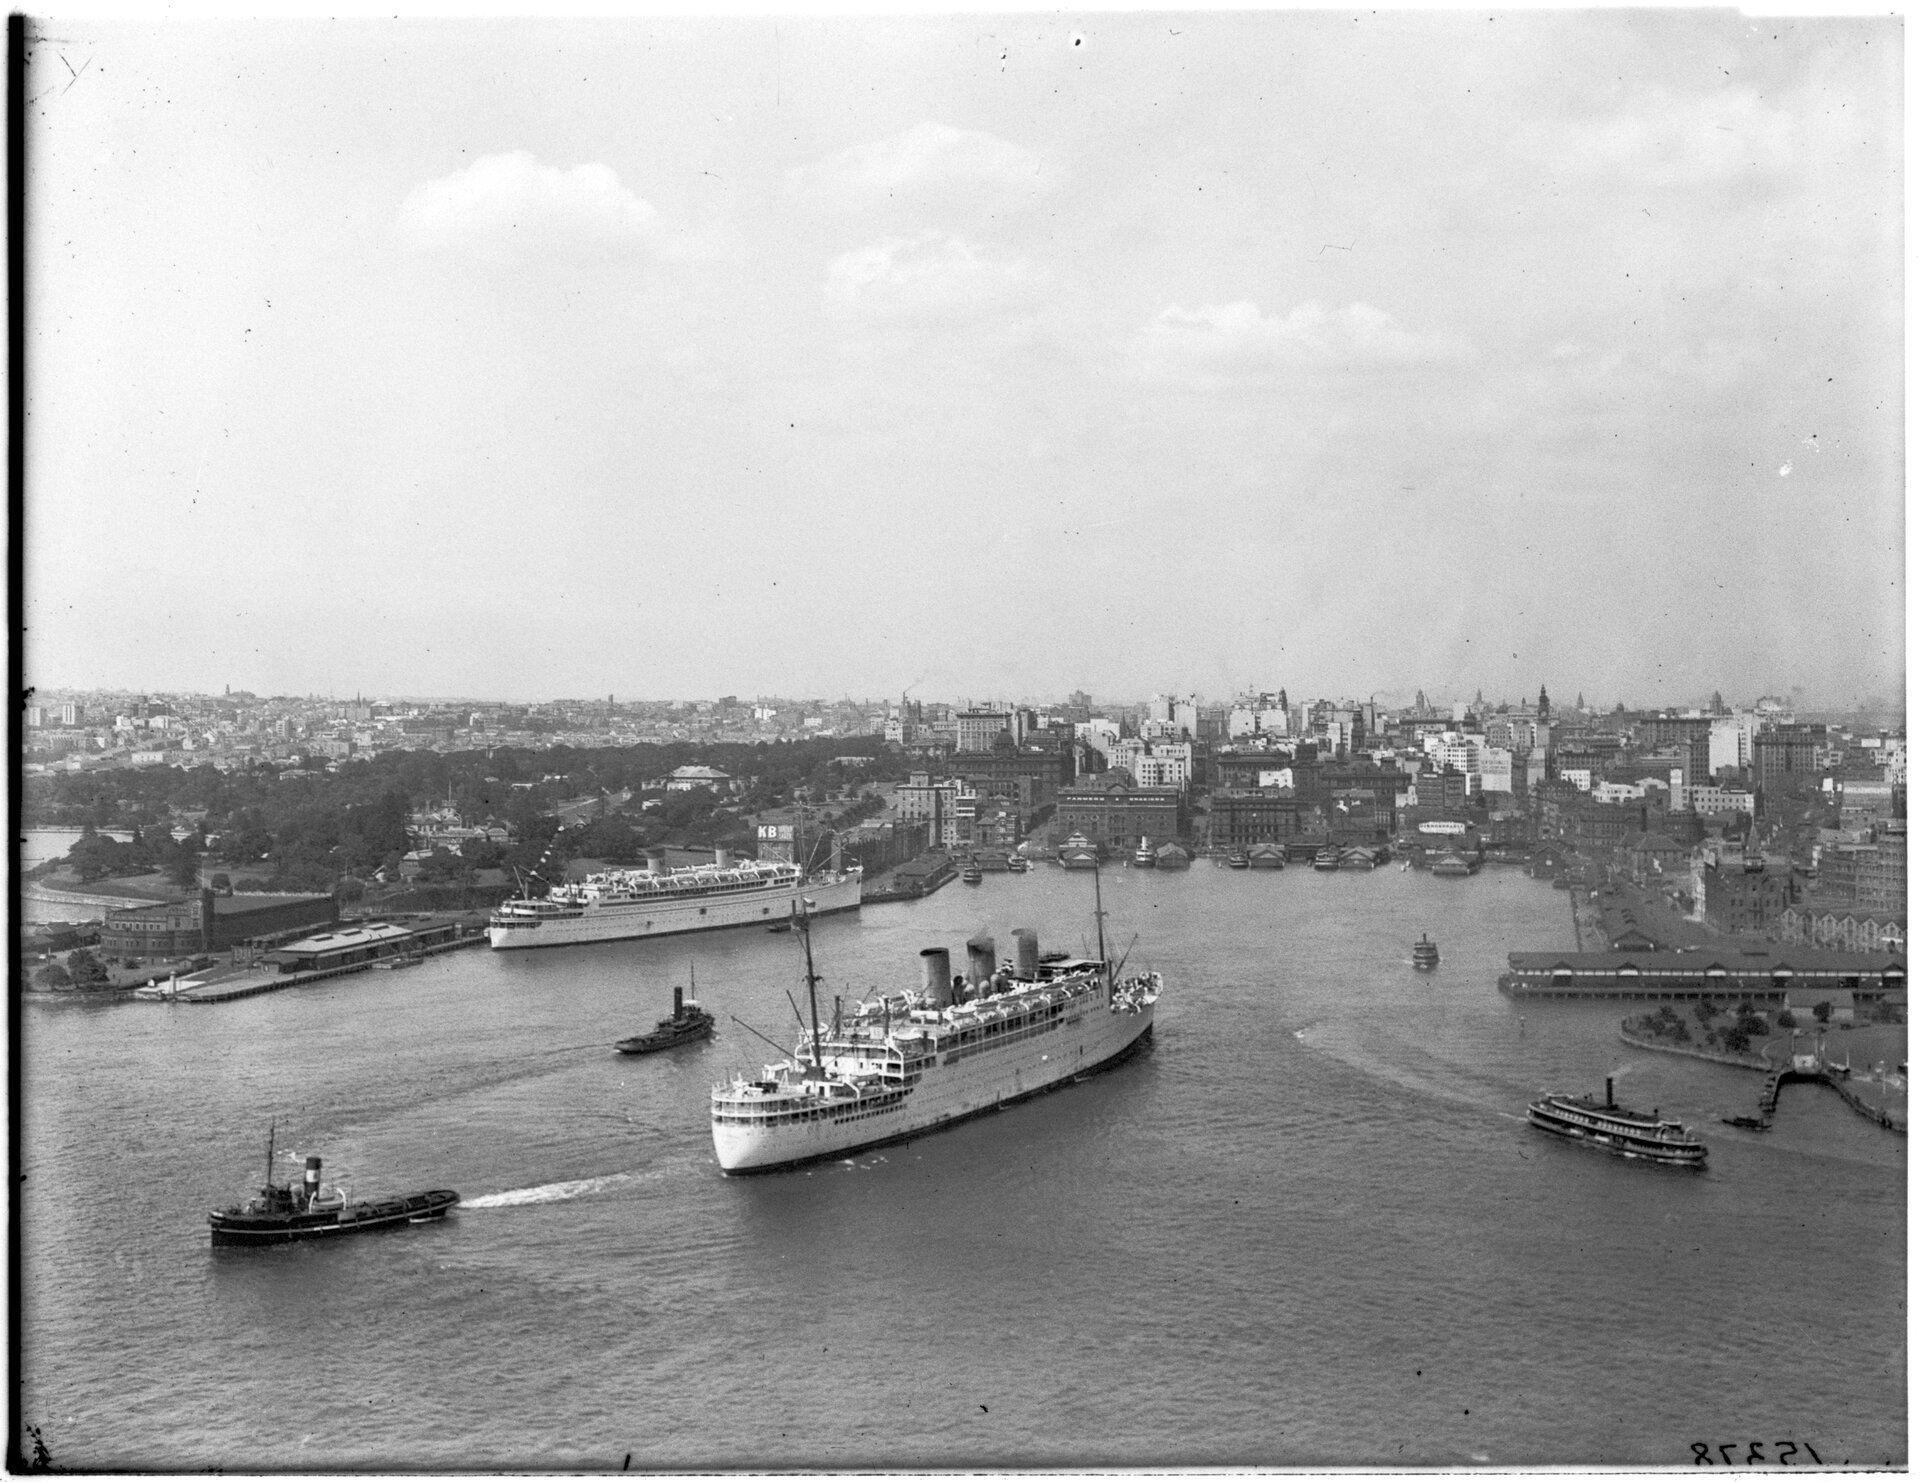 Ocean liners in Sydney Harbour